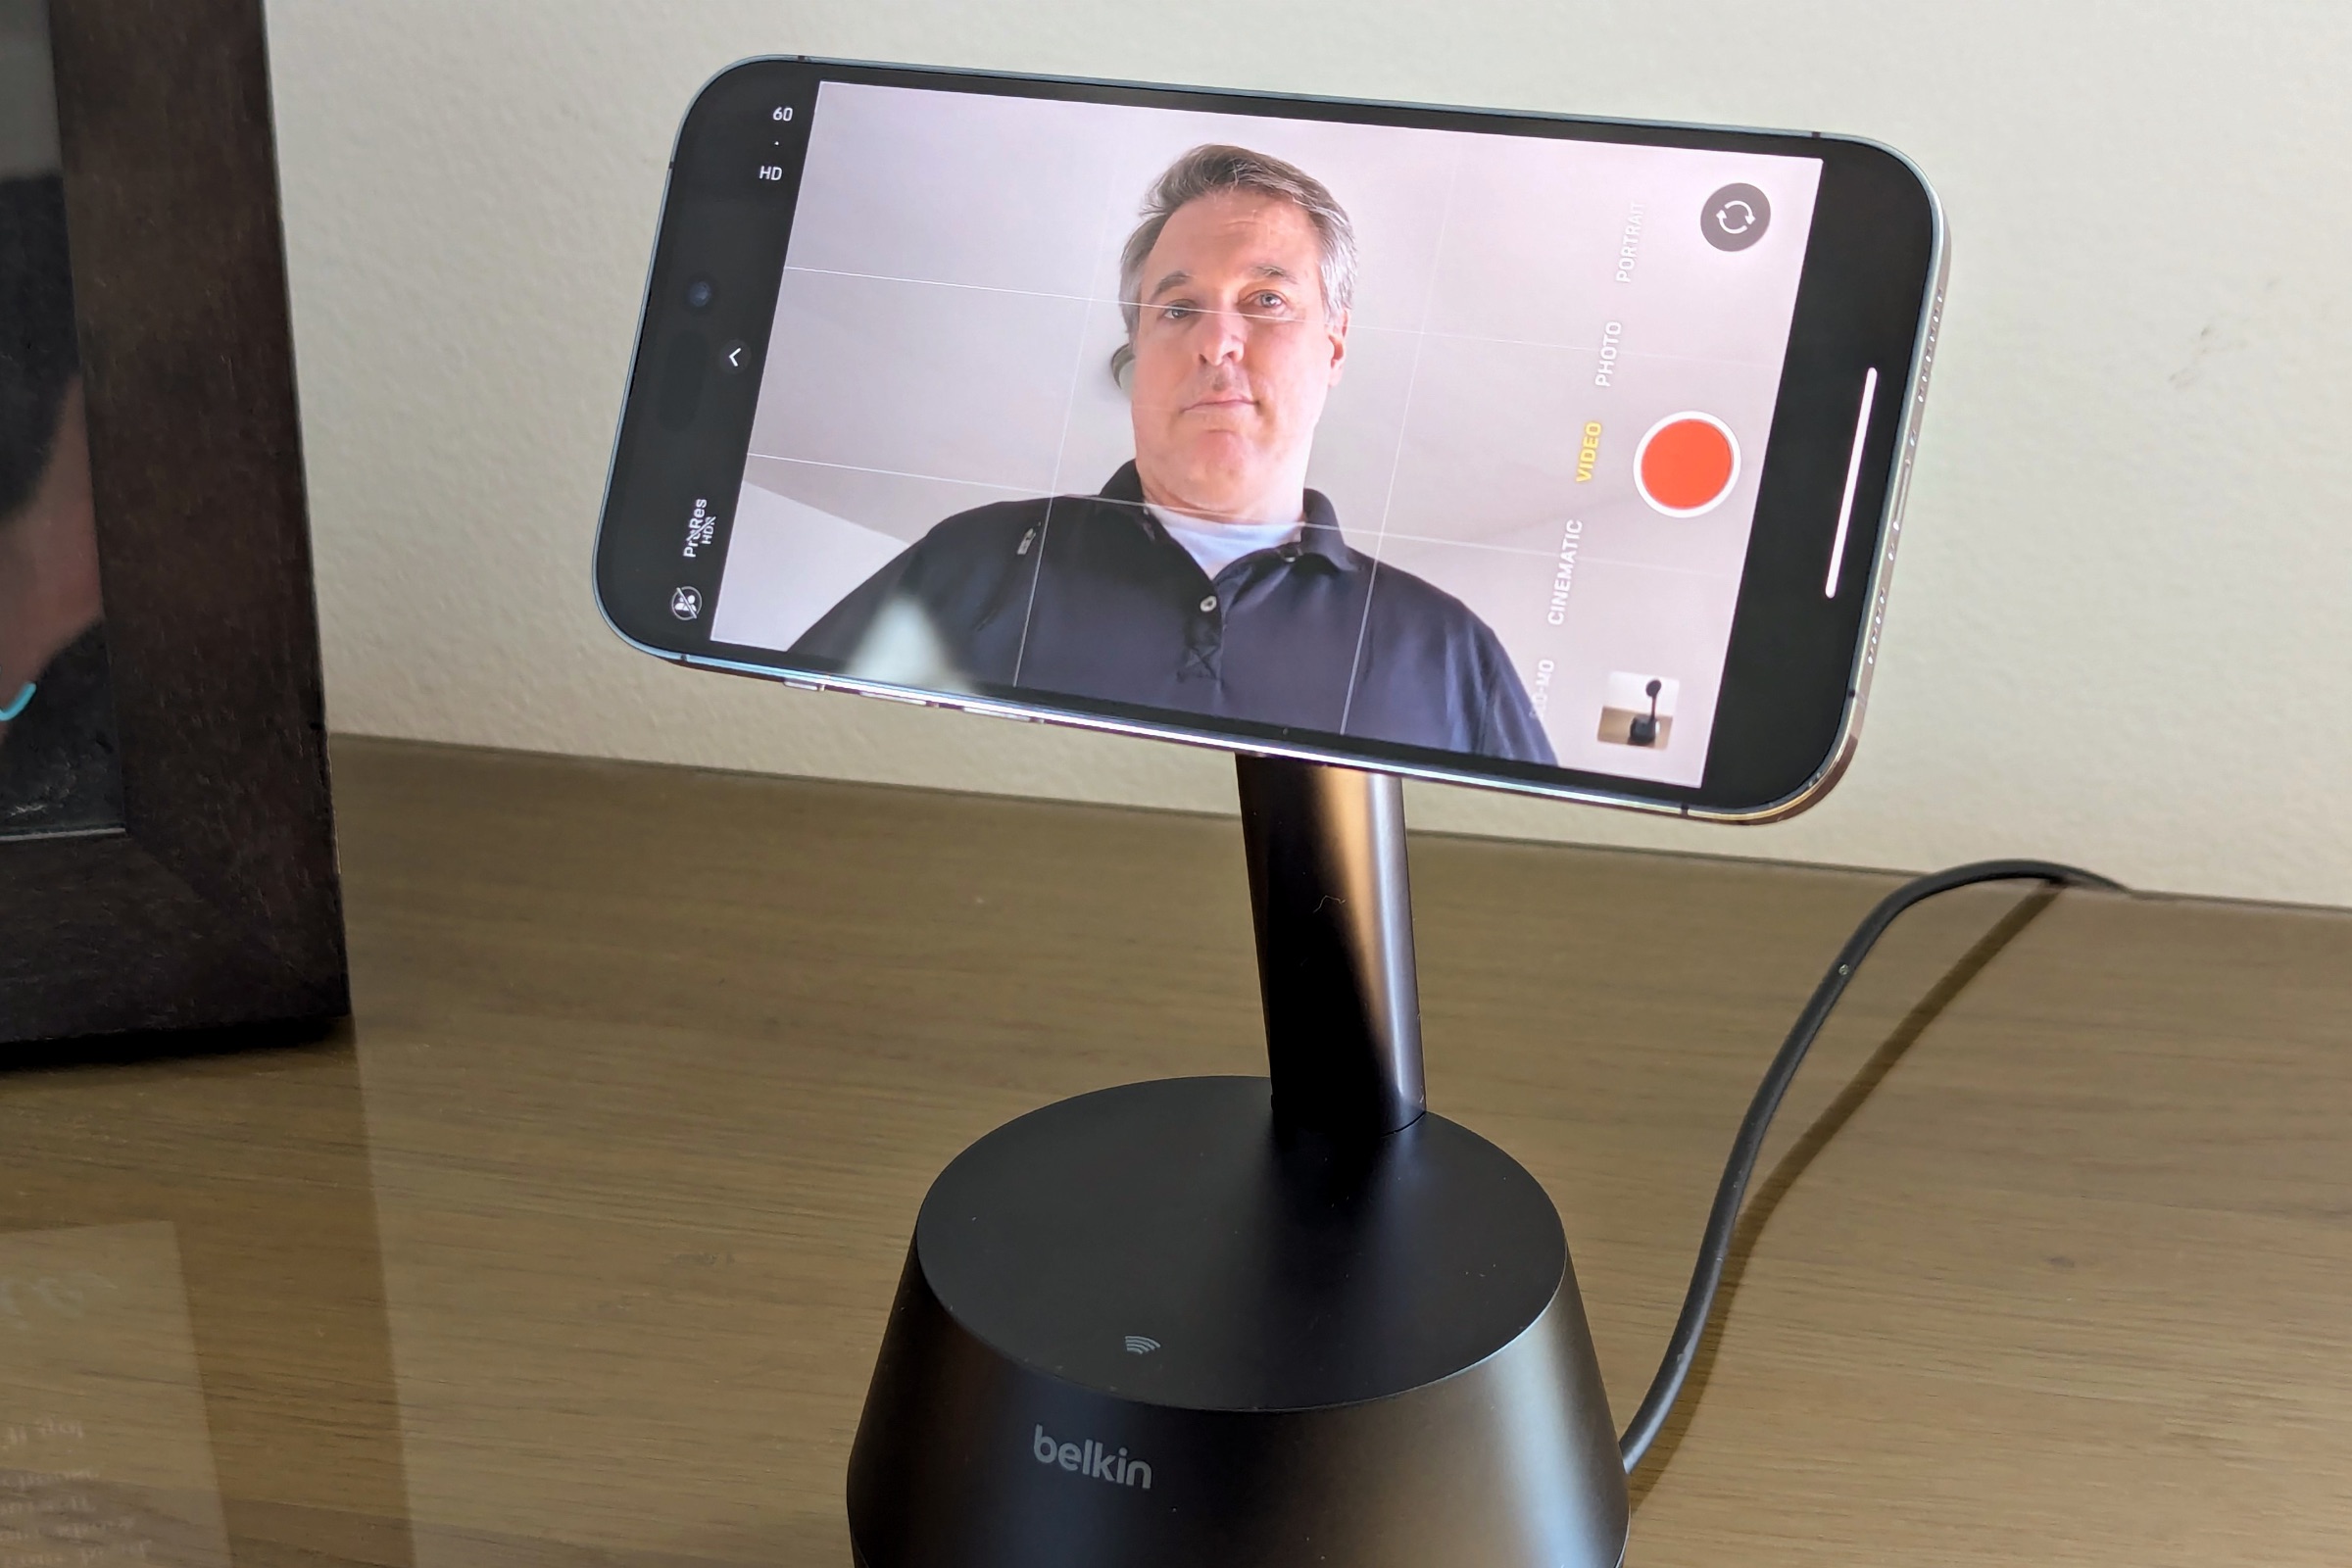 Belkin Stand Pro mostrando la aplicación de cámara del iPhone con una persona siendo seguida.